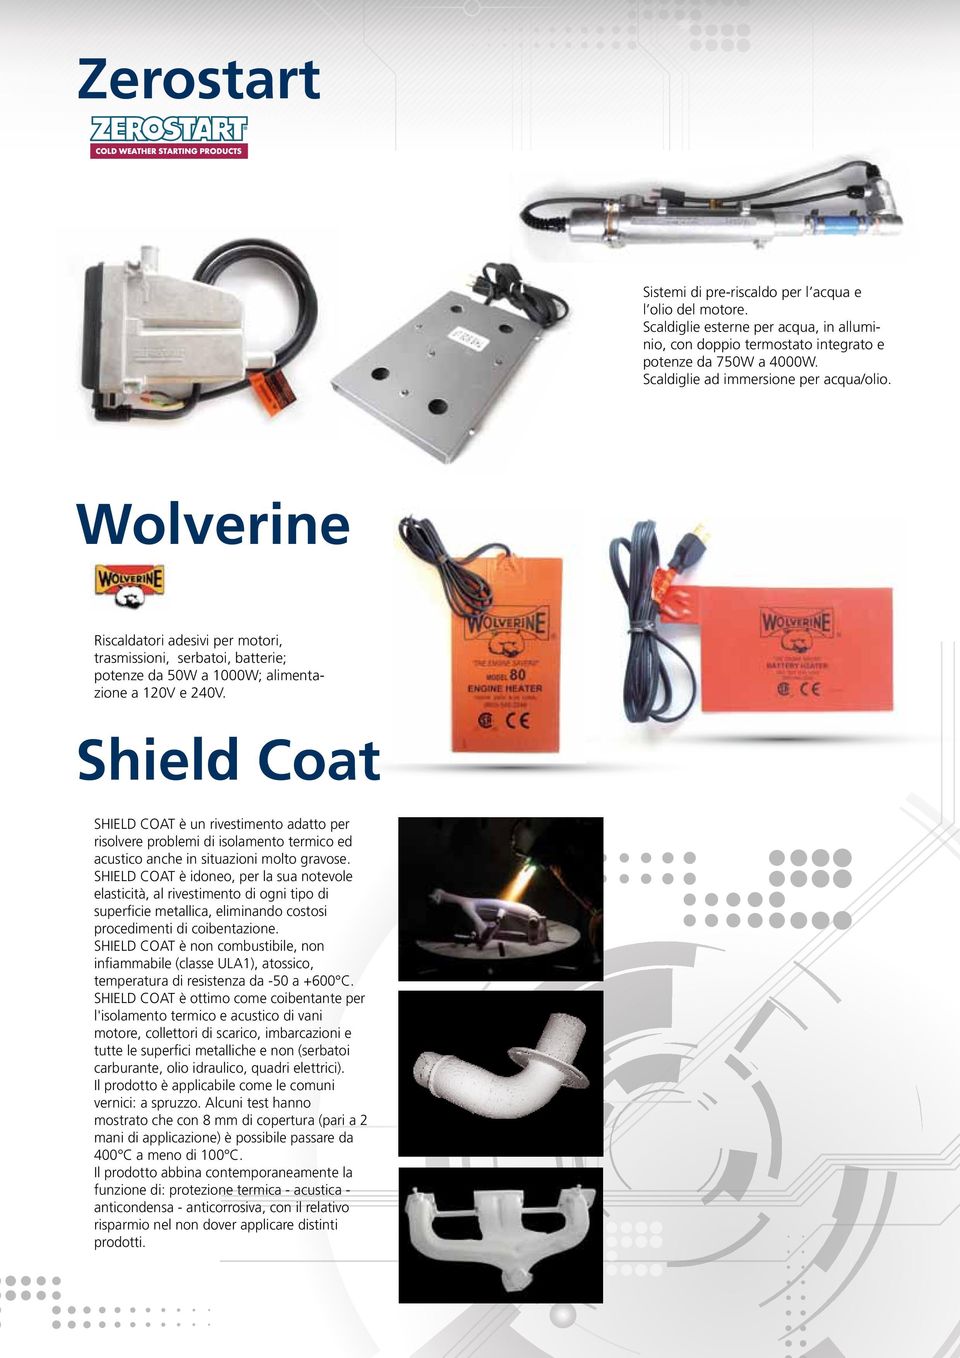 Shield Coat SHIELD COAT è un rivestimento adatto per risolvere problemi di isolamento termico ed acustico anche in situazioni molto gravose.